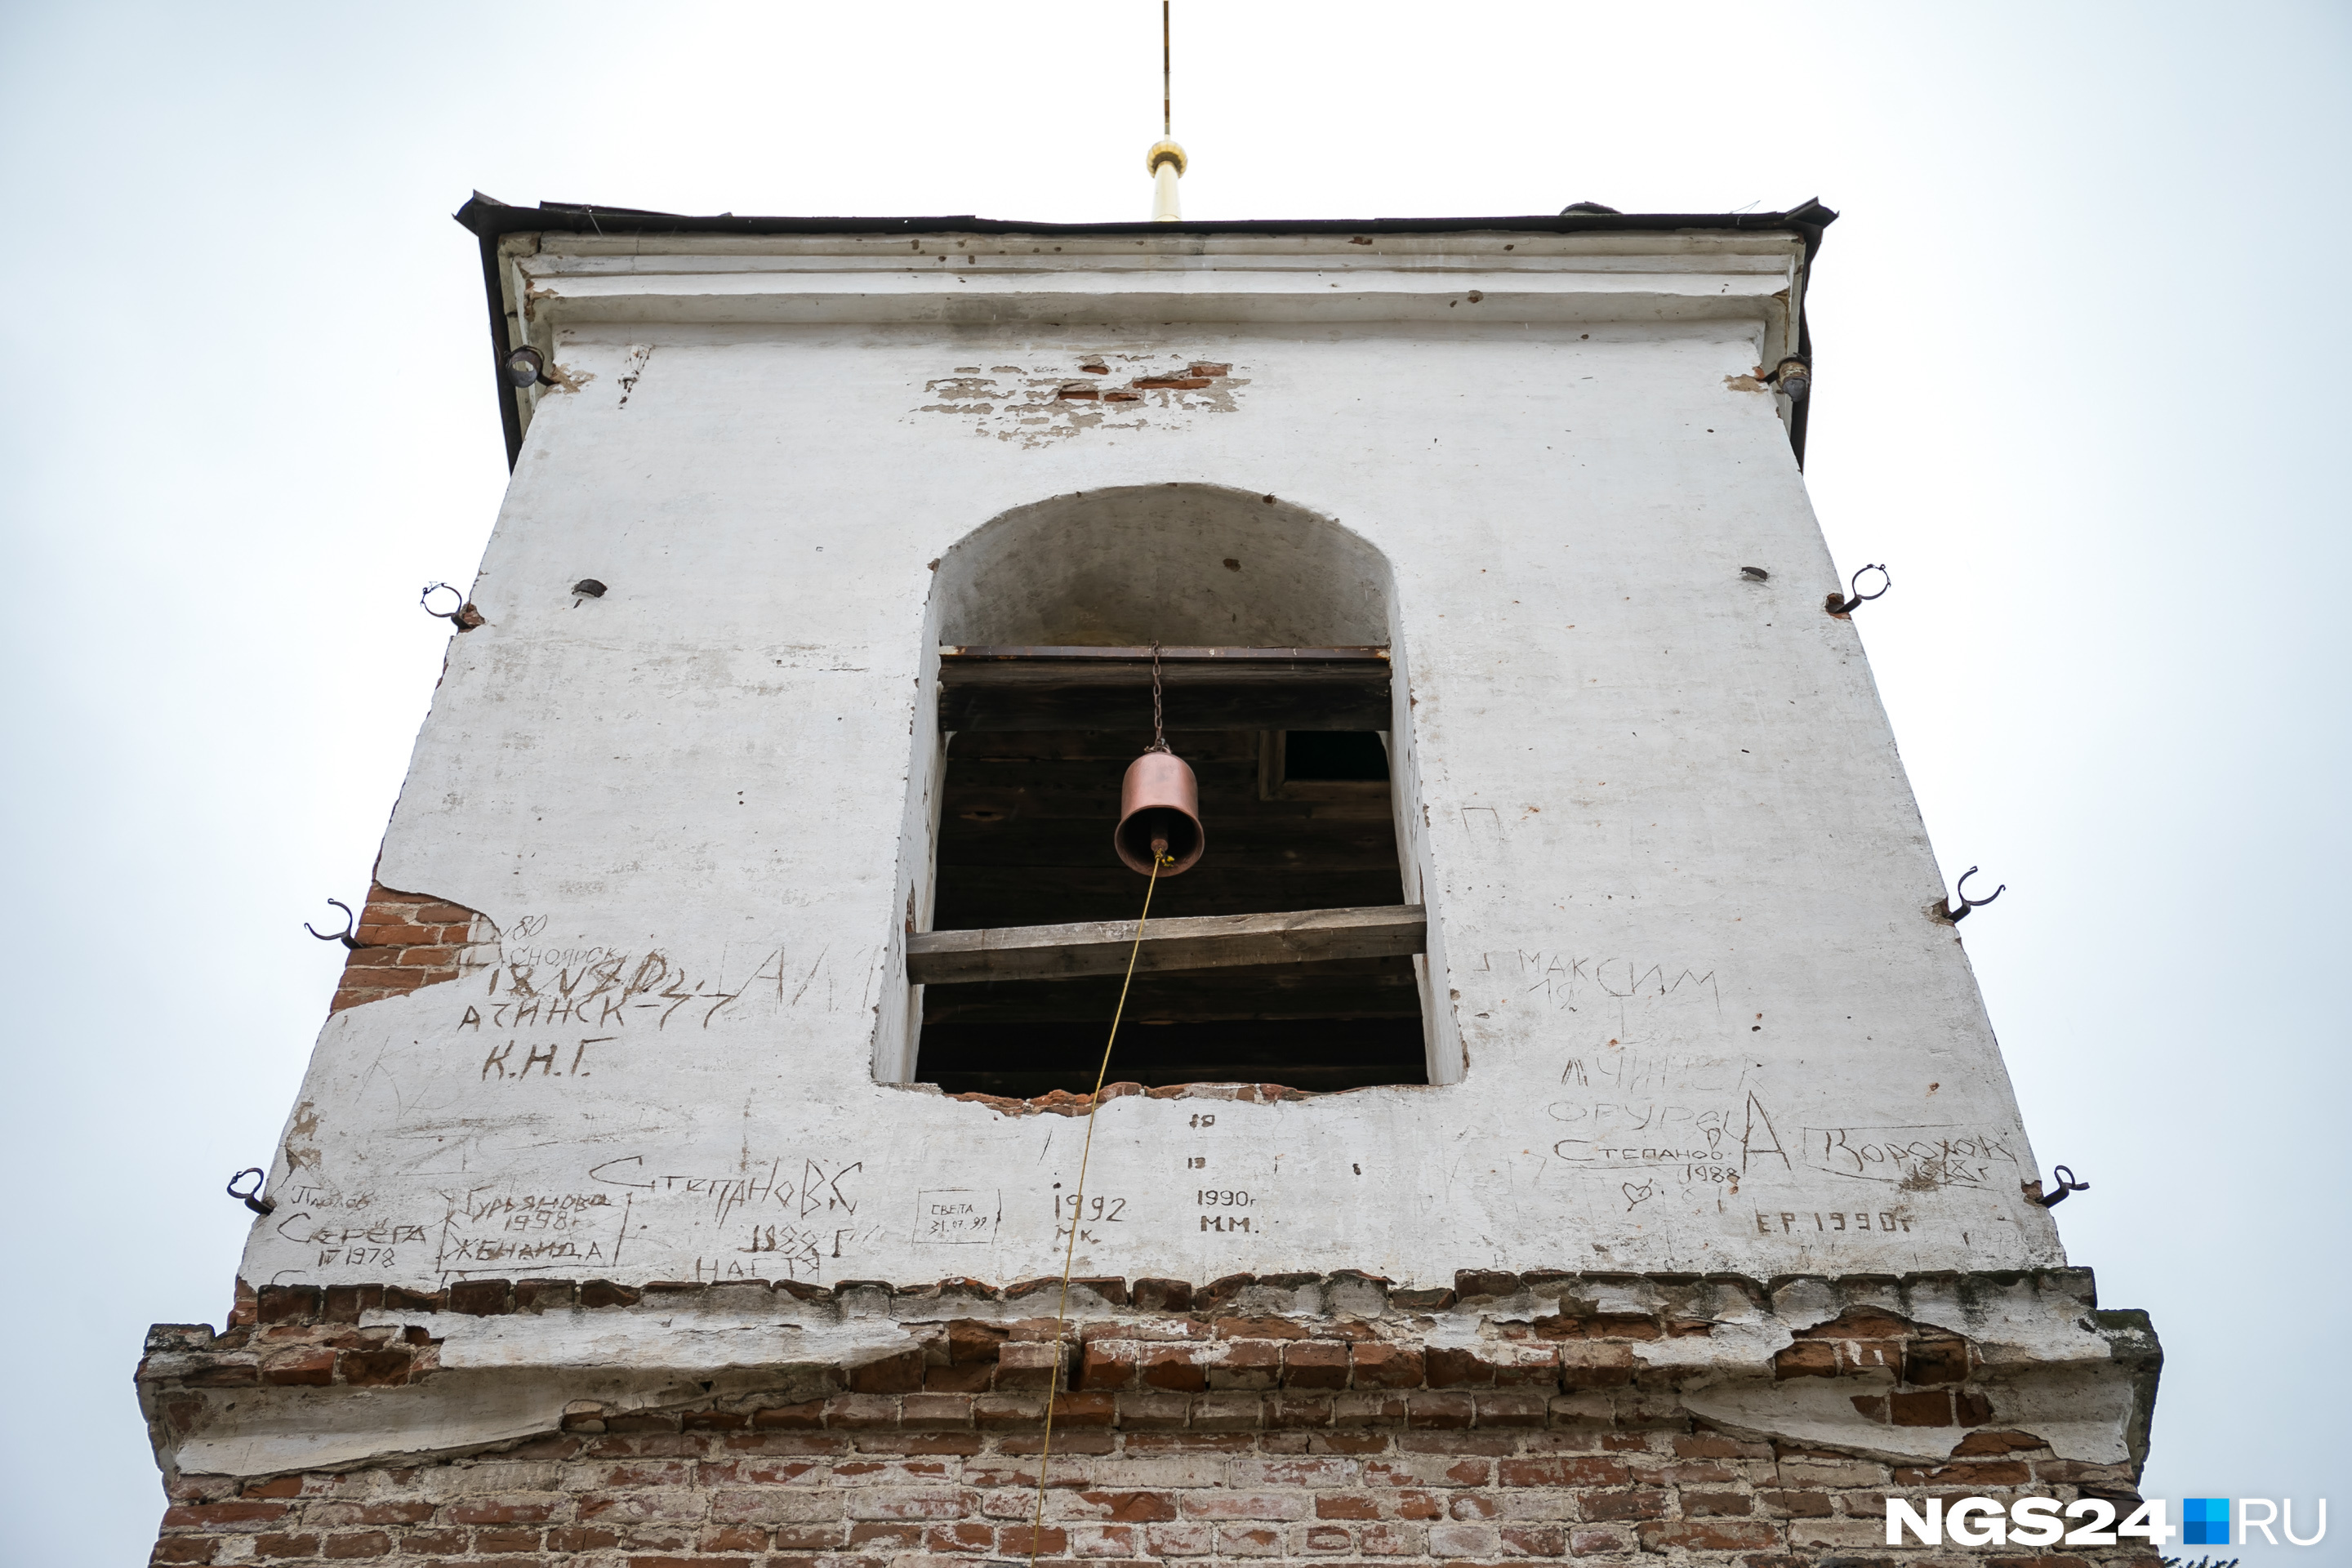 Местные повесили новый колокол, старый сняли еще в 30-х годах XX века